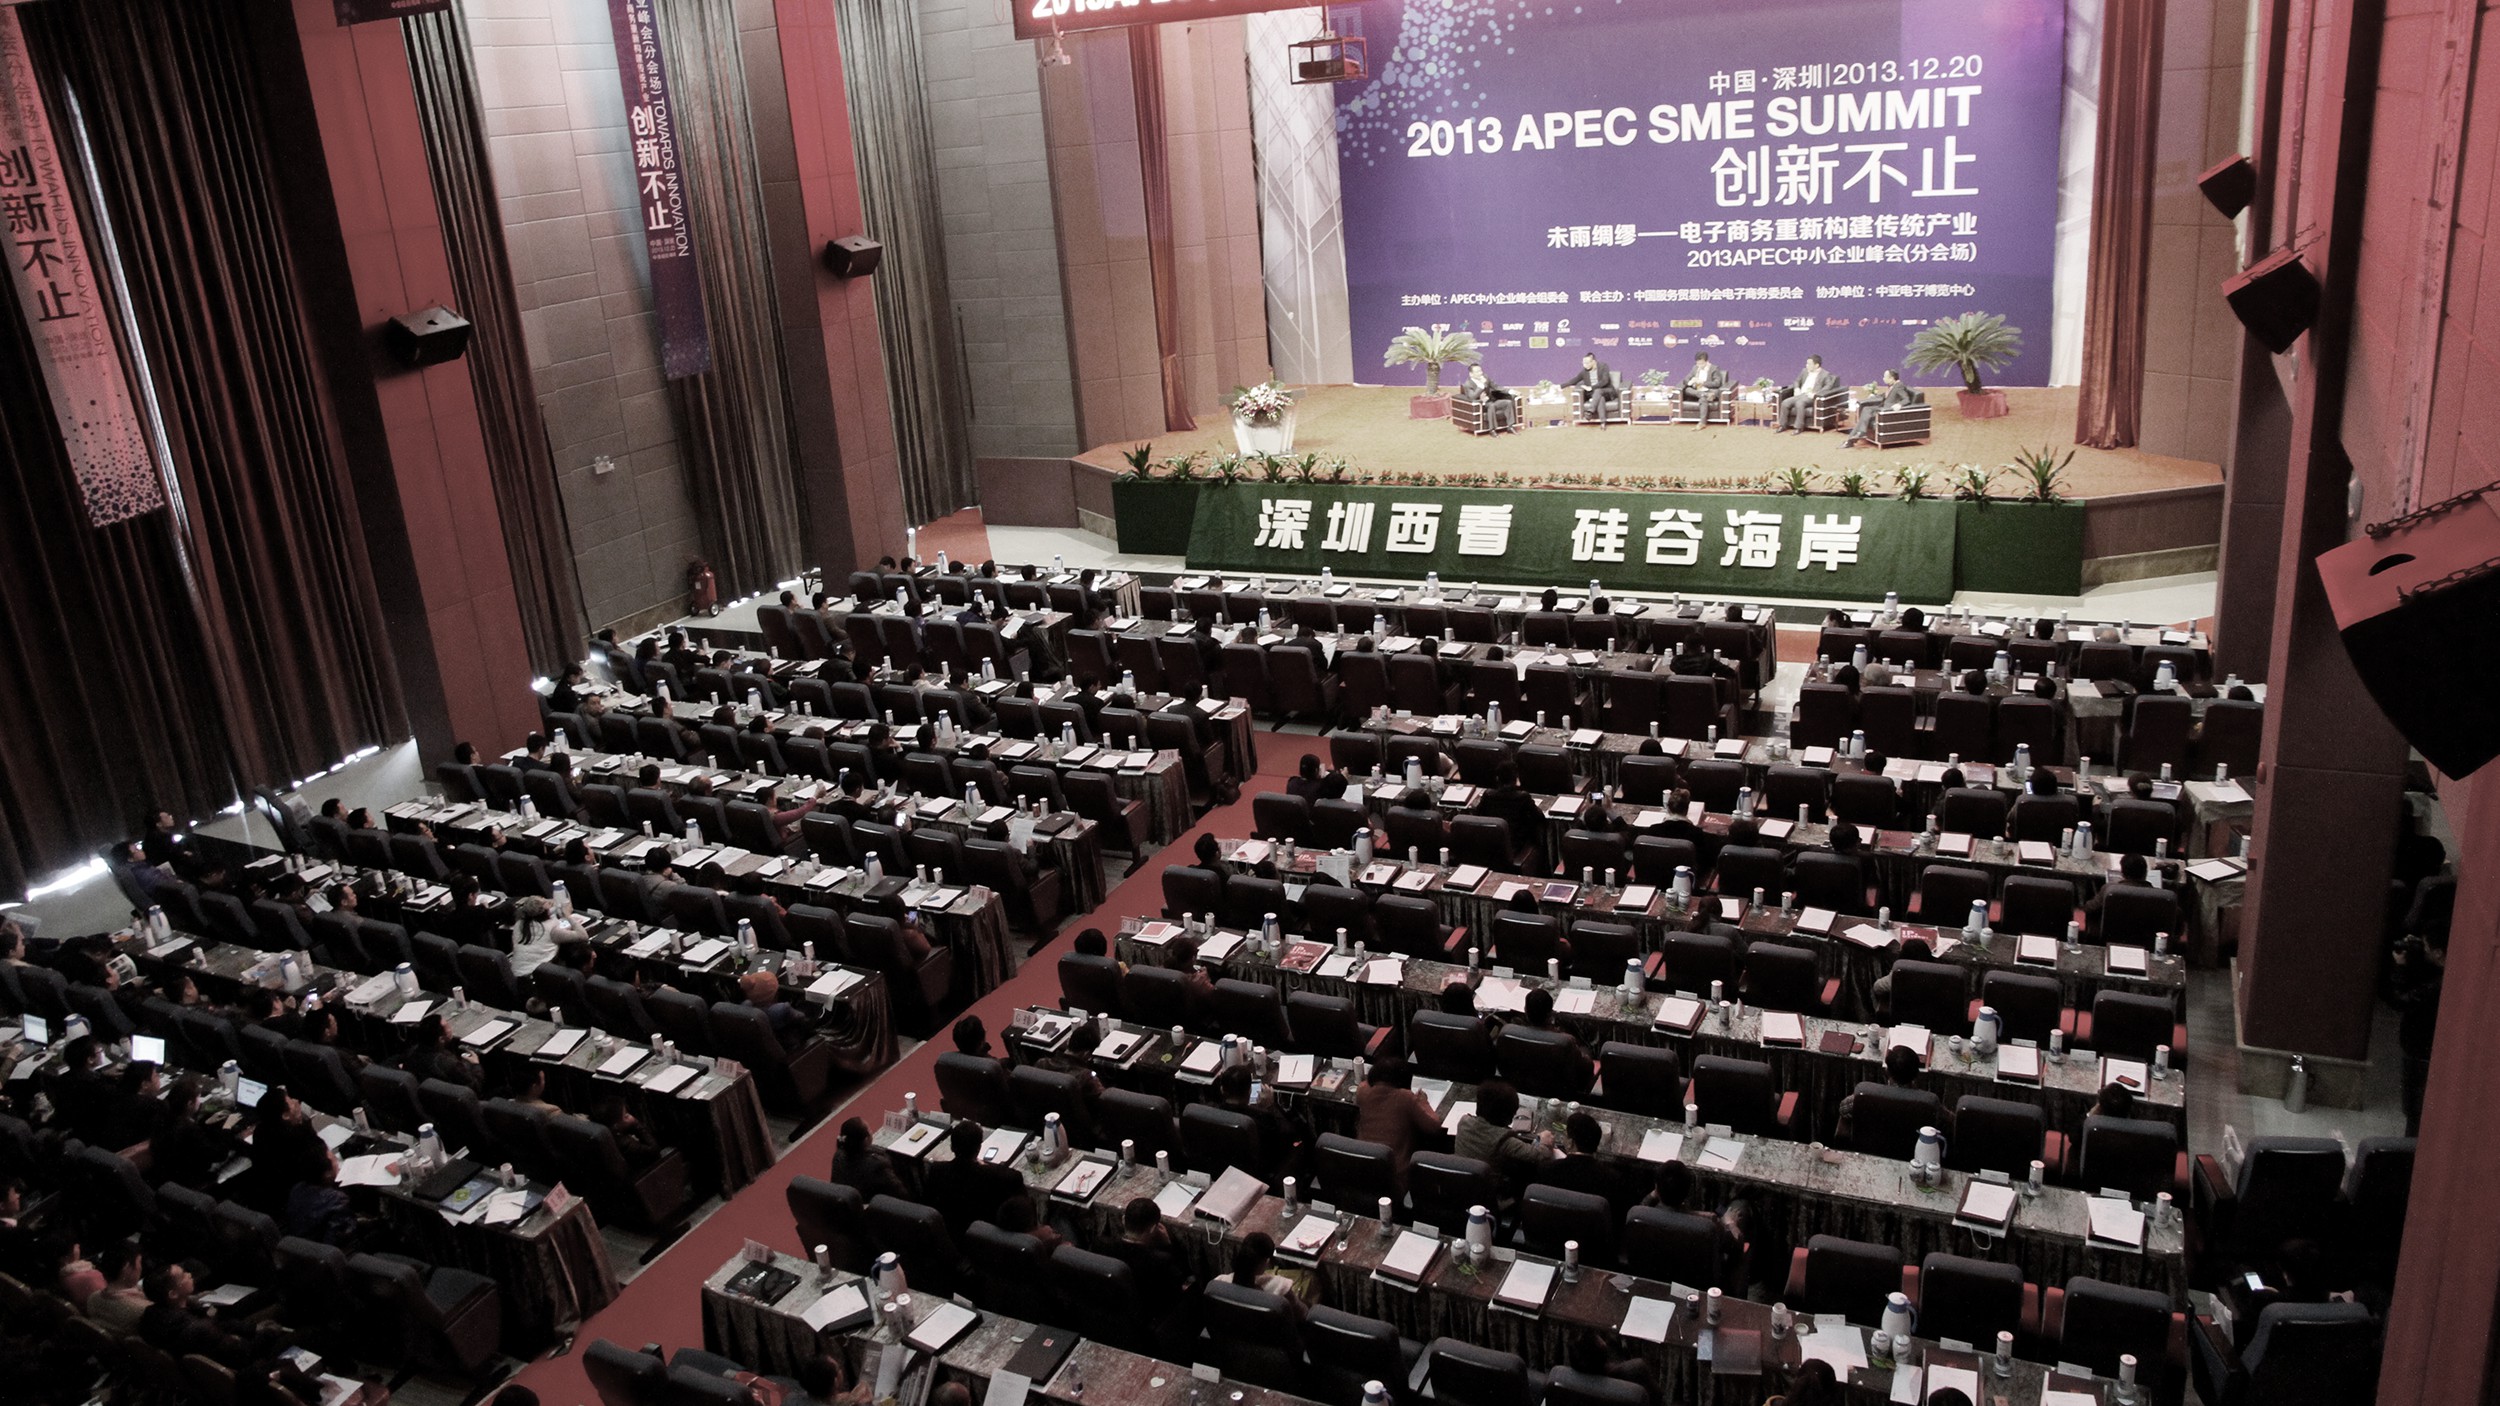 中亚集团_APEC中小企业峰会分会论坛在深圳市宝安区沙井中亚国际会展中心成功举行(图1)